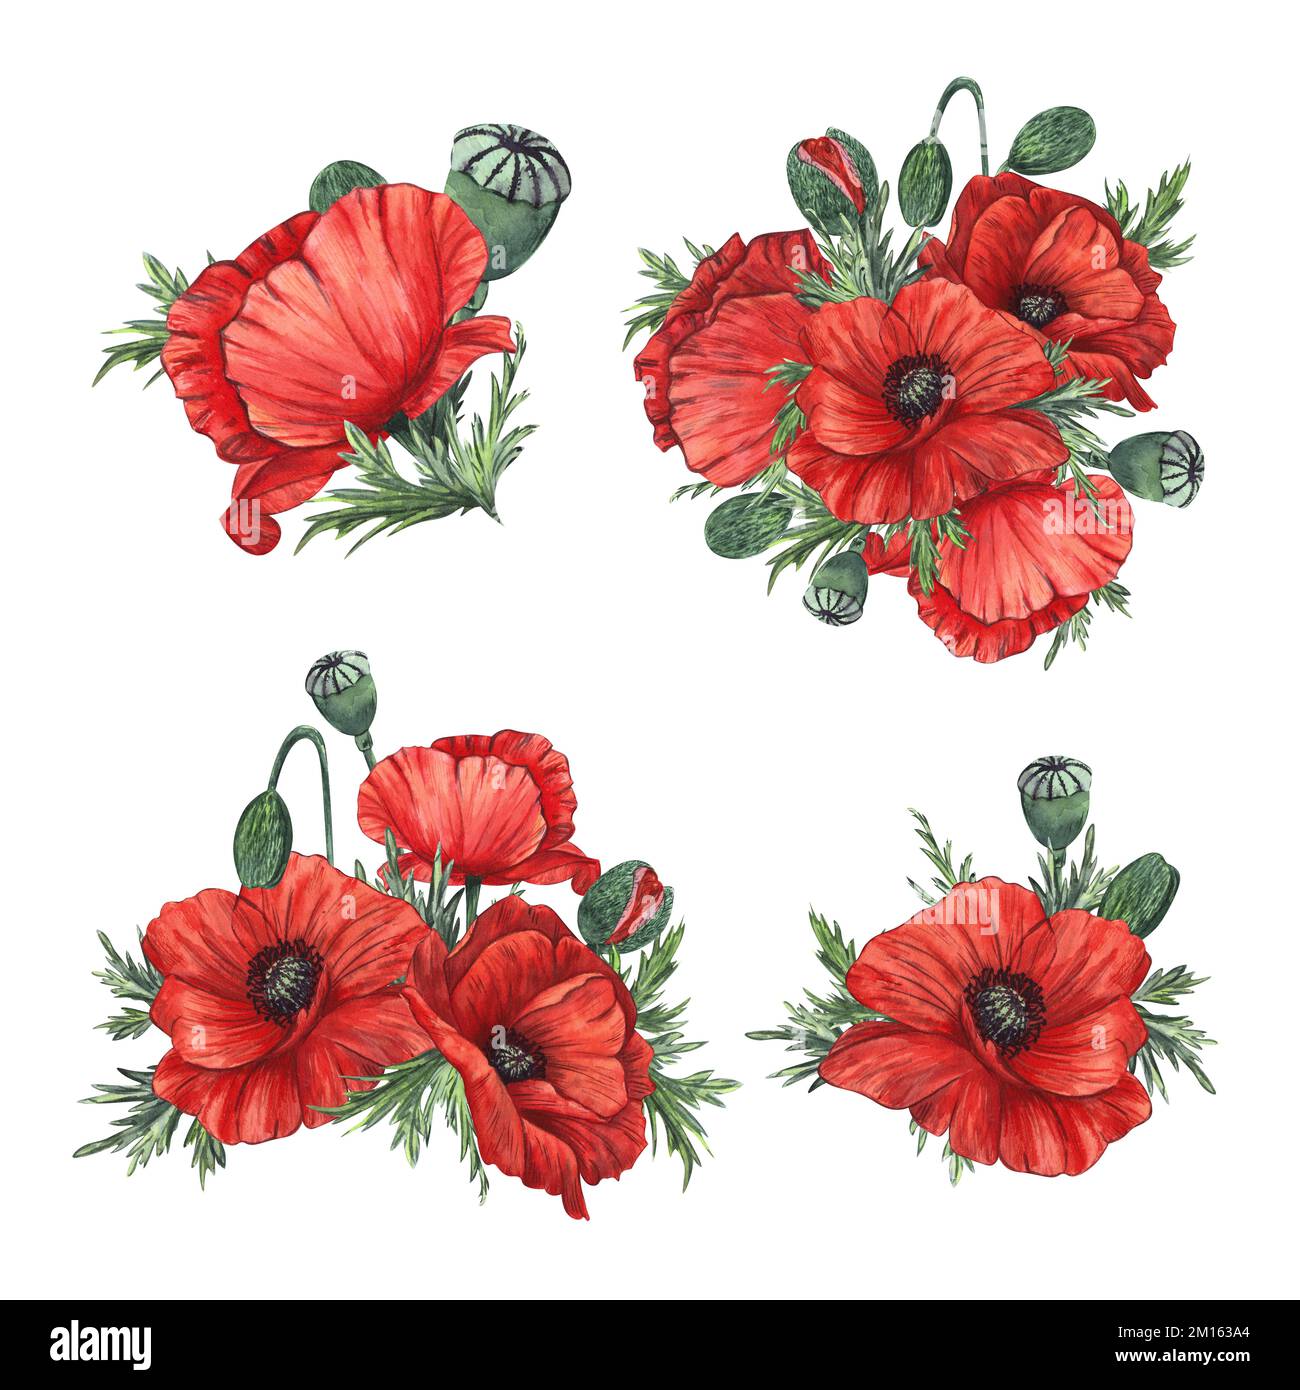 Composition de fleurs et de bourgeons de pavot rouge peints en aquarelle, isolés sur fond blanc. Pour le design, les invitations, l'emballage, les cartes postales Banque D'Images